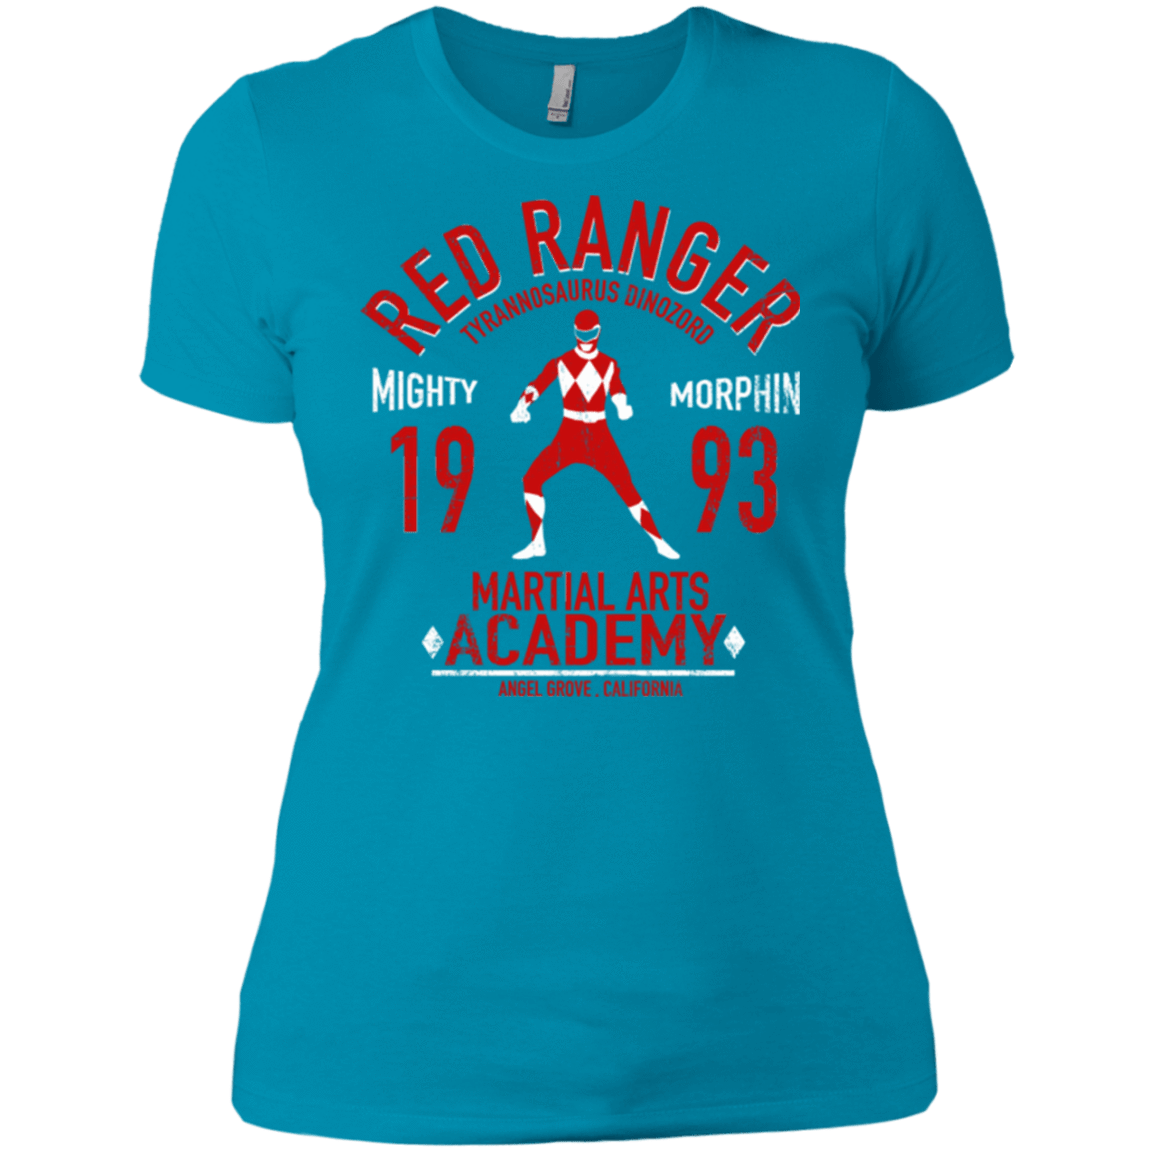 T-Shirts Turquoise / X-Small Tyrannosaurus Ranger (1) Women's Premium T-Shirt